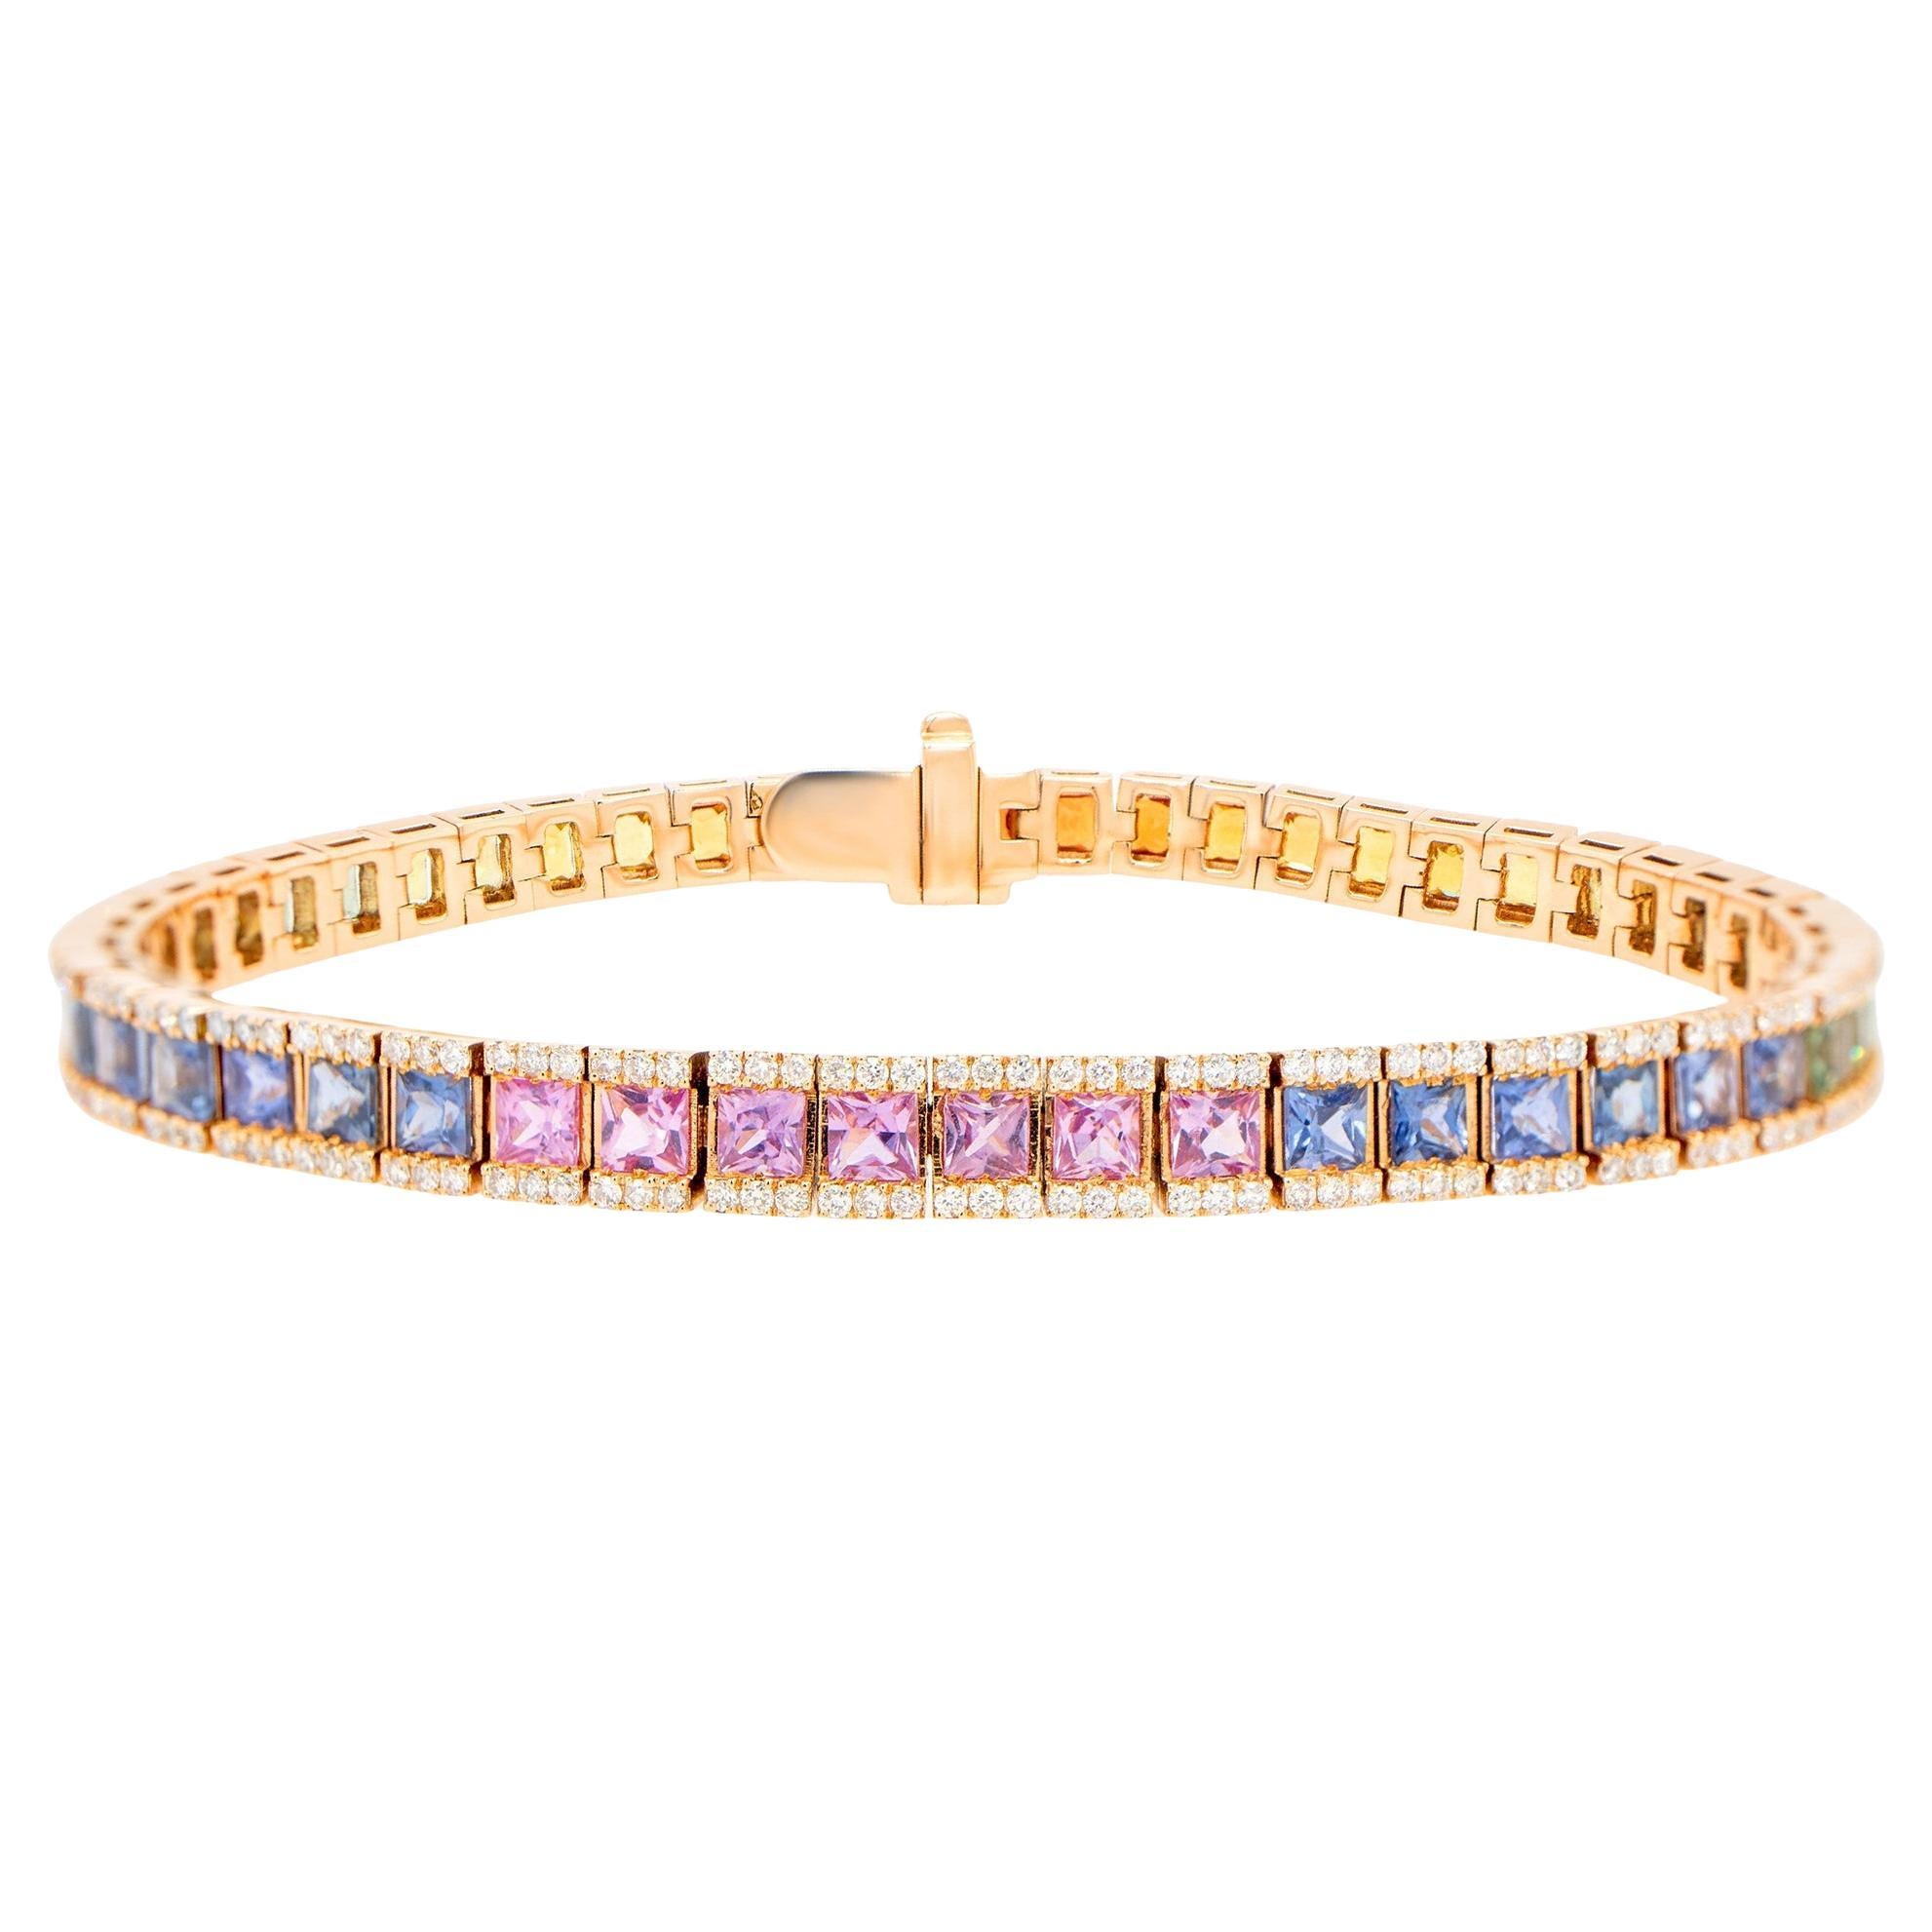 Square Cut Multicolor Sapphires Rainbow Bracelet Diamond Setting 9 Carats 18K For Sale